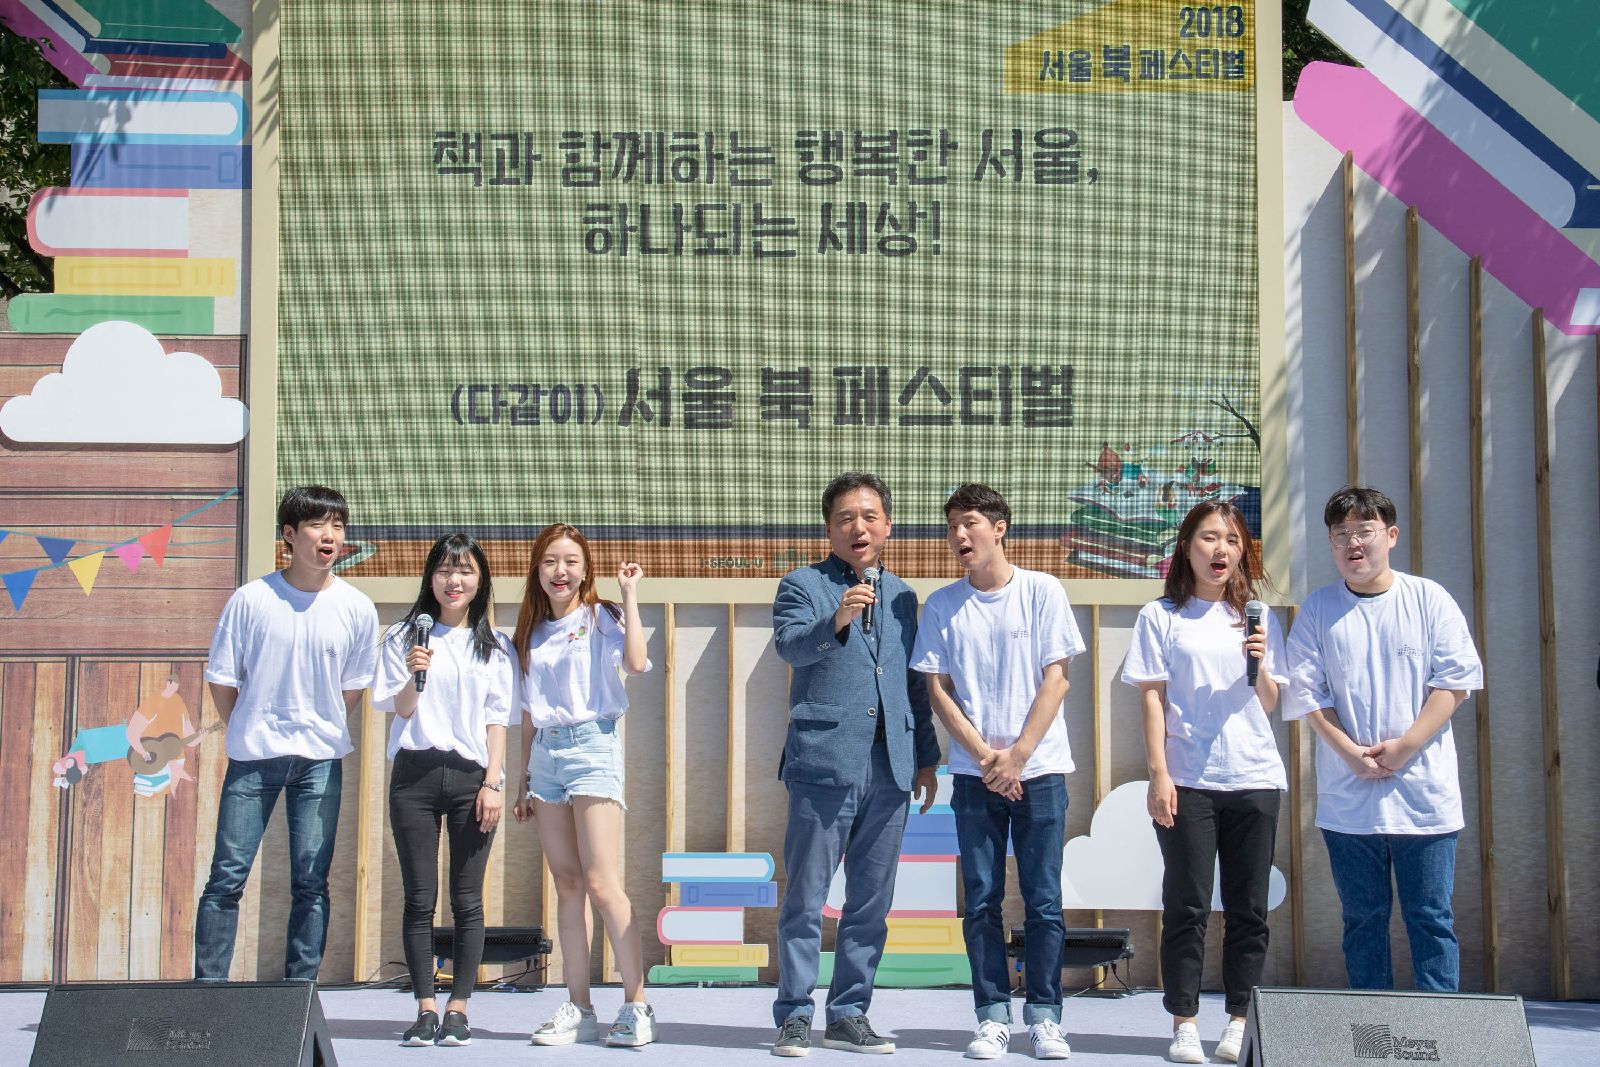 2018 서울 북 페스티벌 개막식 책과 함꼐하는 행복한 서울, 하나되는 세상